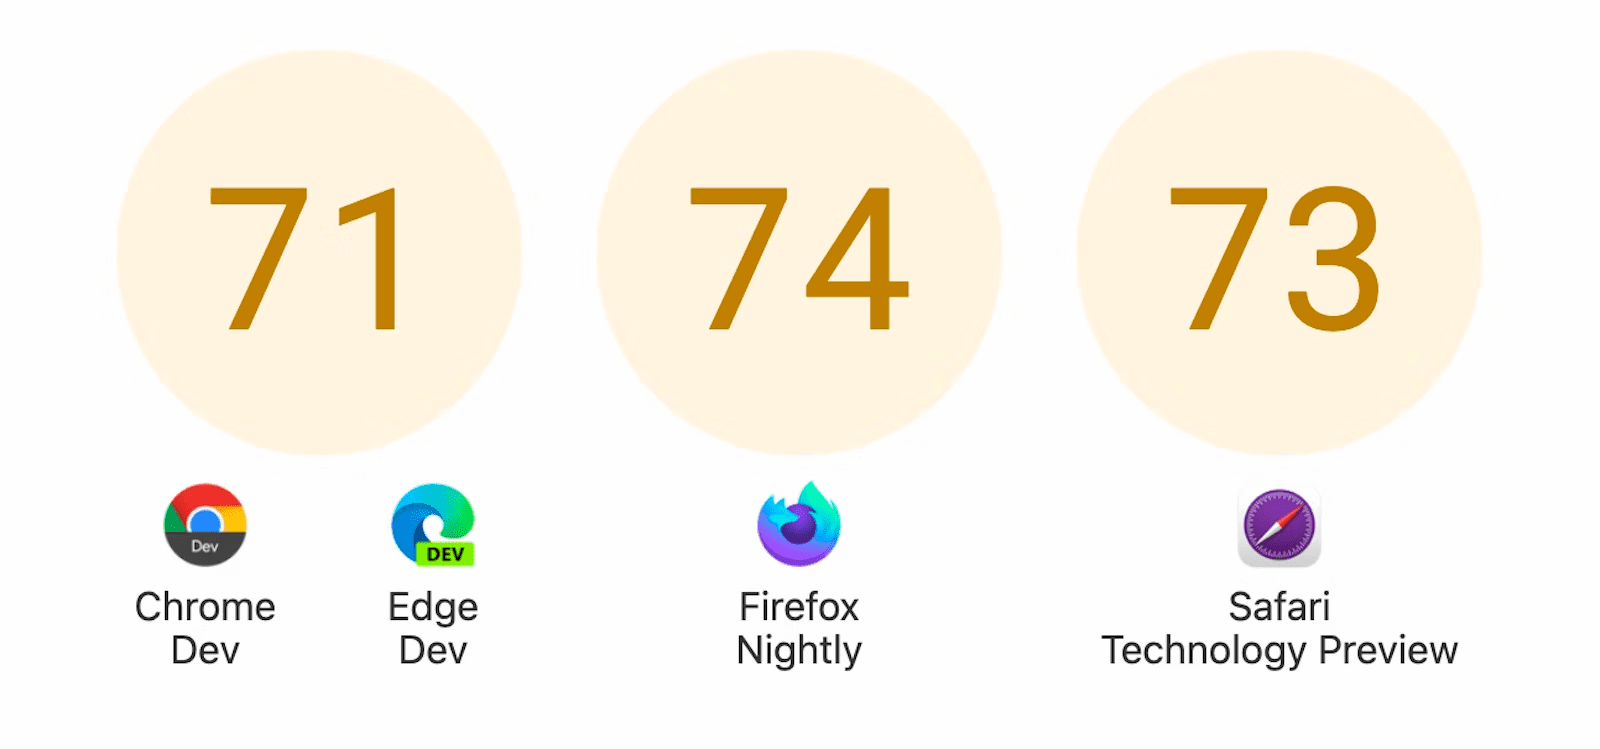 מוצגים שלושה מעגלים עם ציונים: 71 ל-Chrome Dev ול-Edge Dev, 74 ל-Firefox Nightly ו-73 ל-Safari Technology Preview.